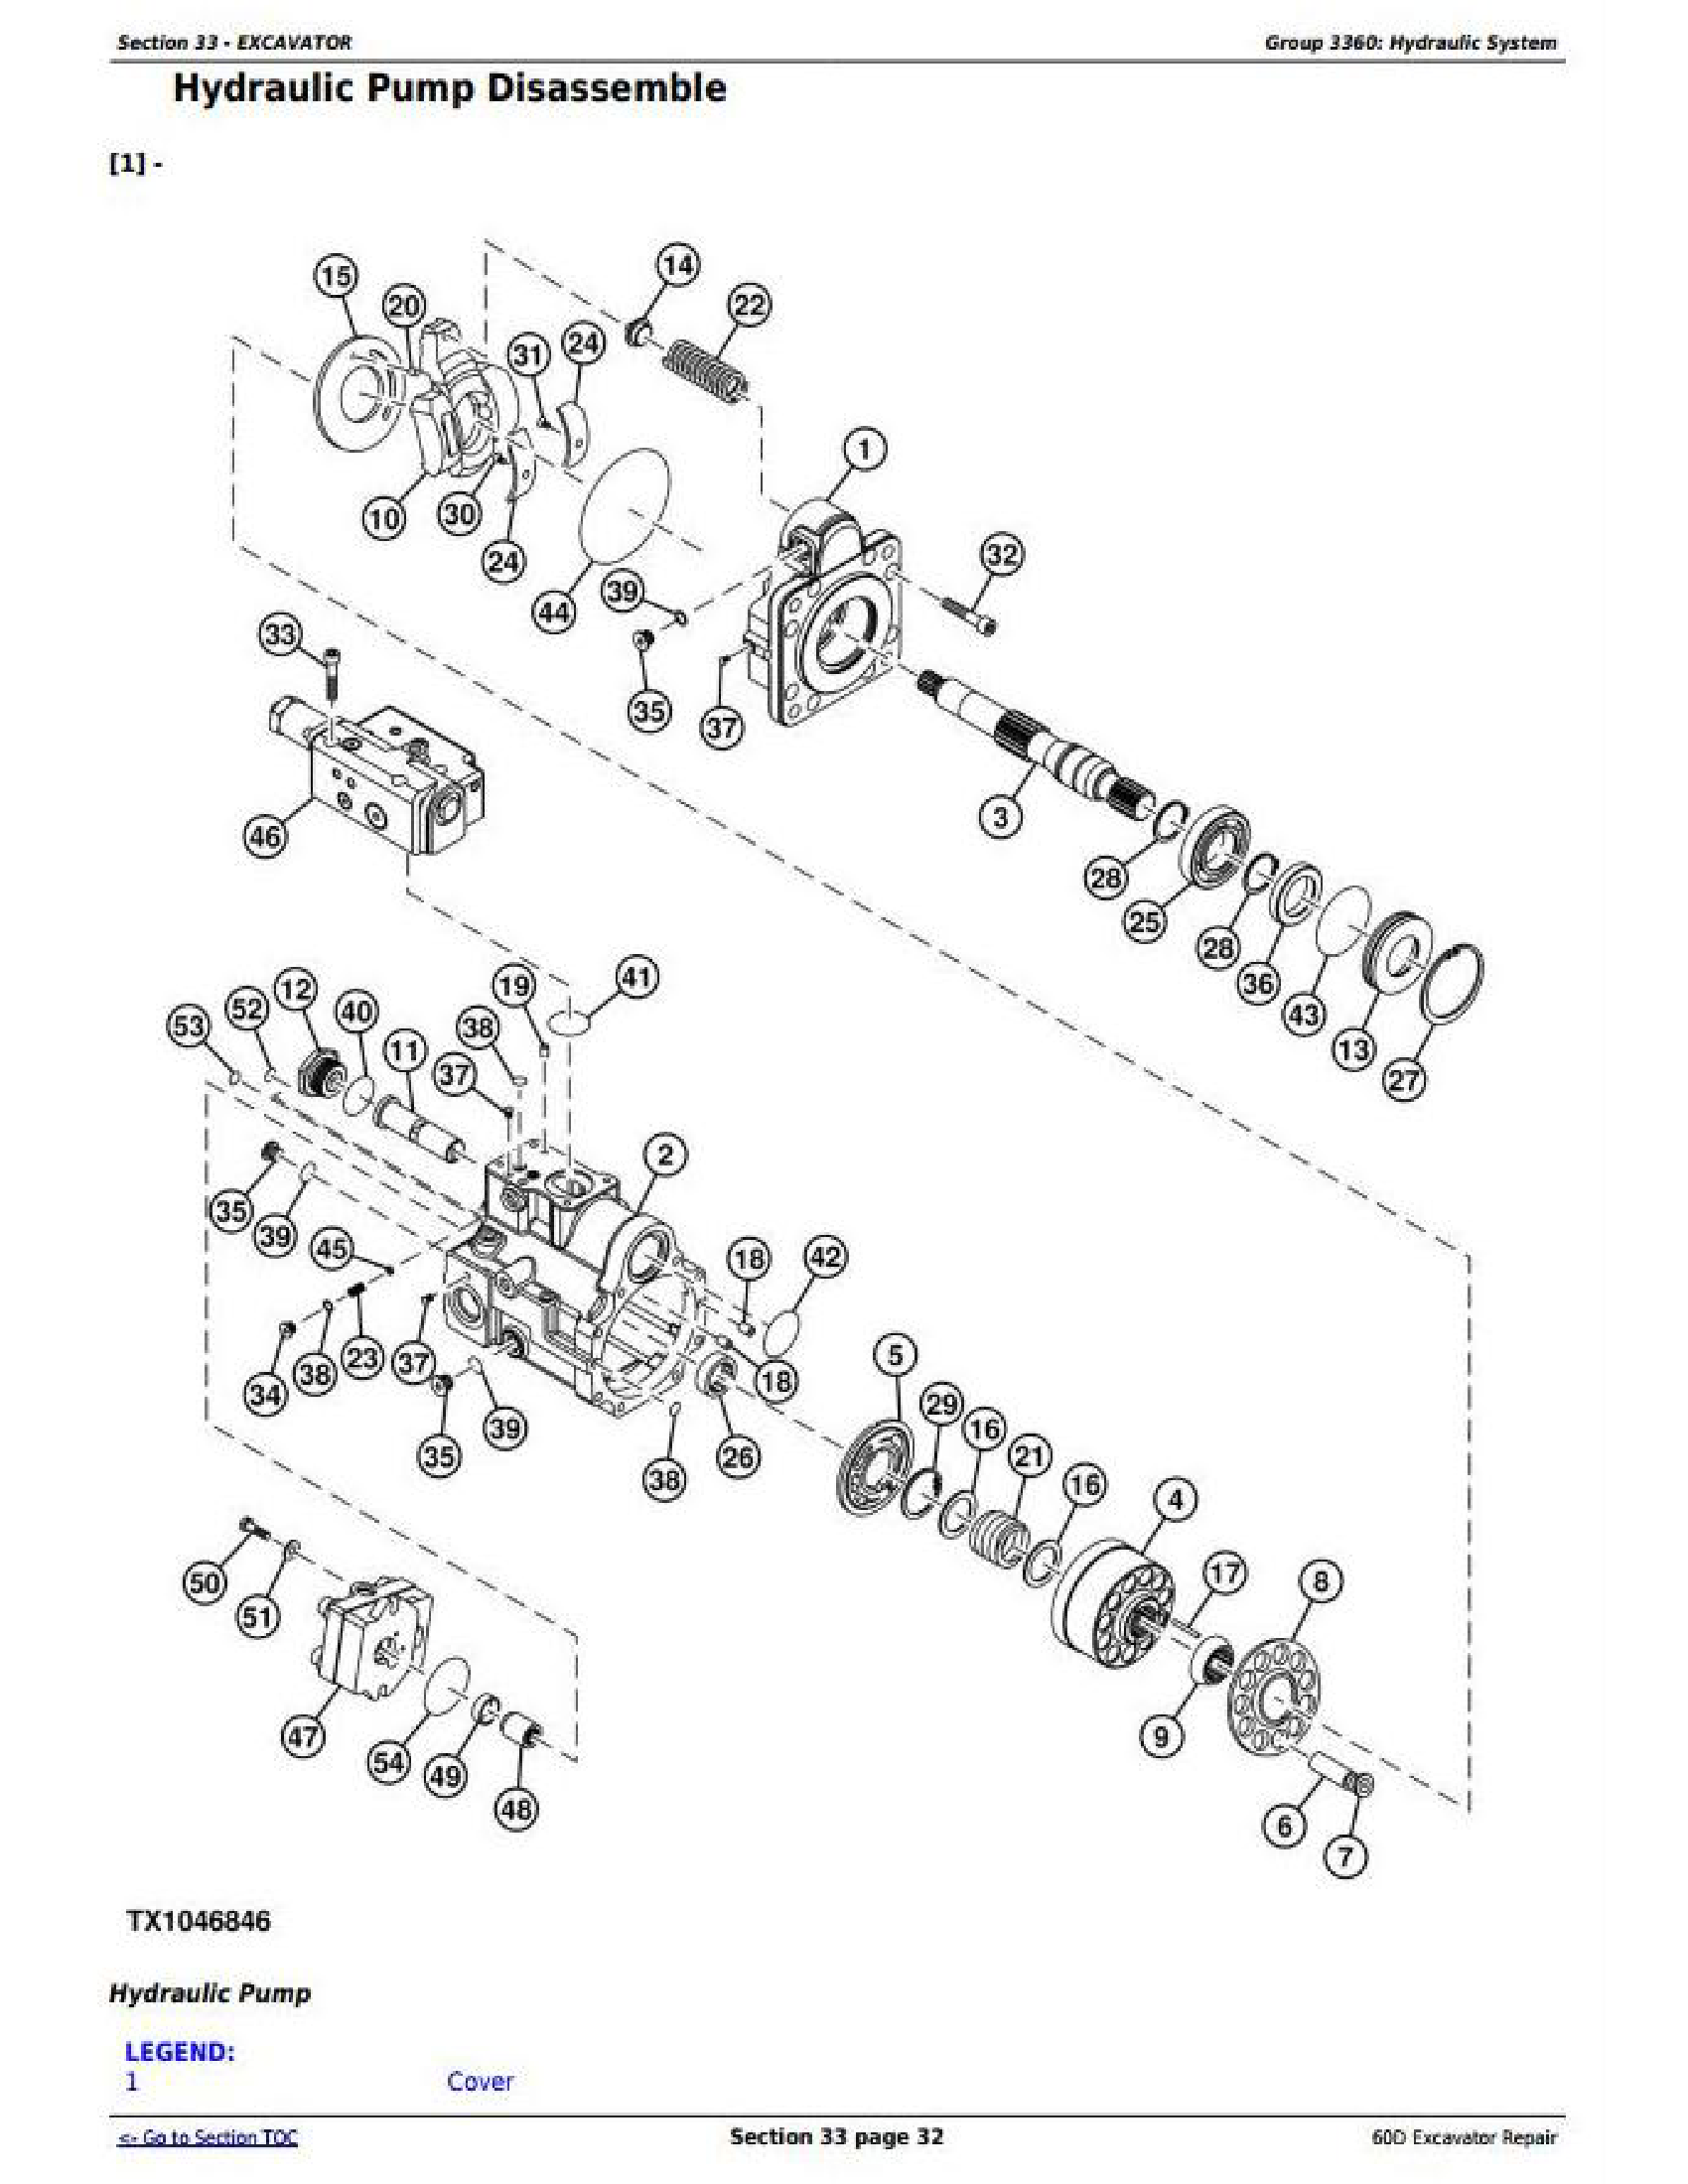 John Deere 848G manual pdf